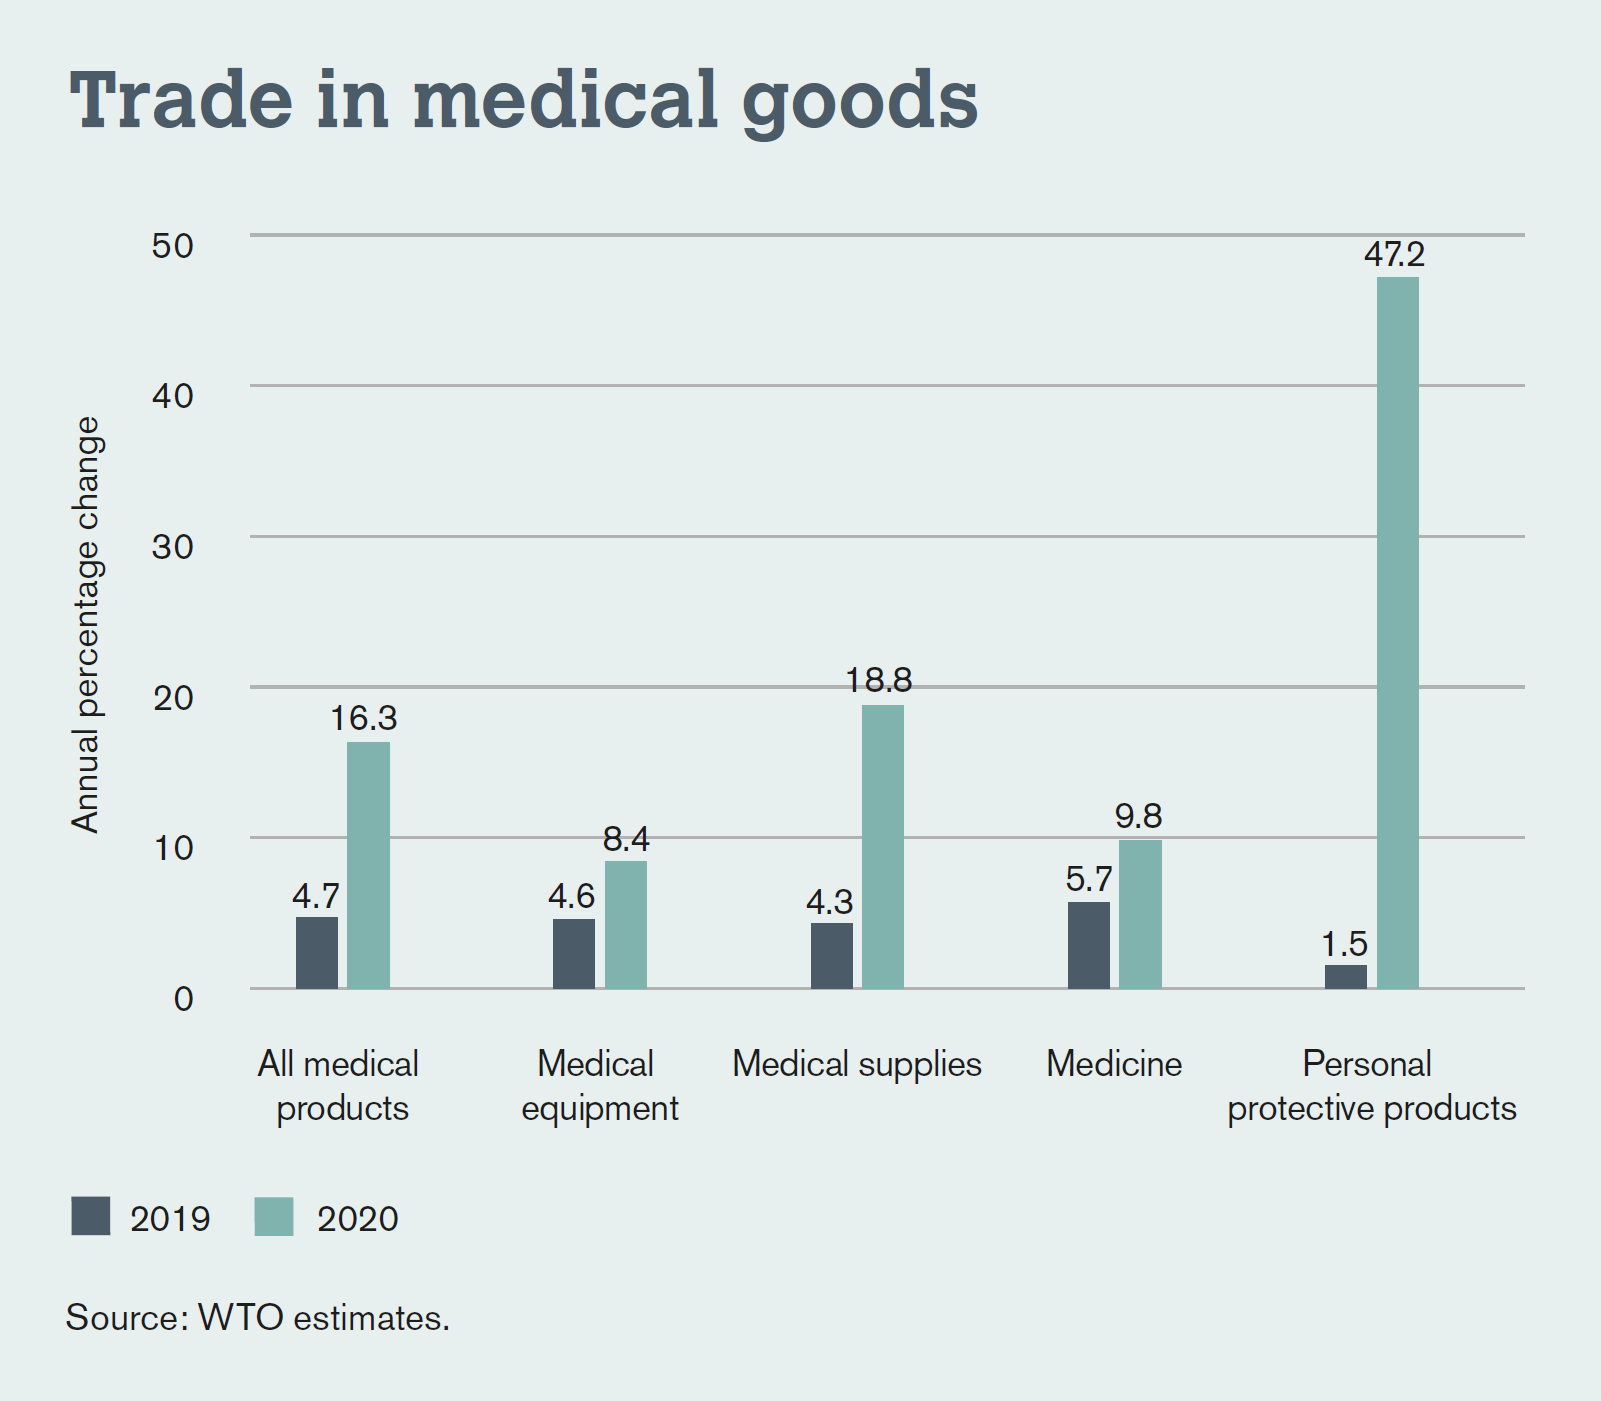 Während der Warenhandel insgesamt aufgrund von Corona zurückging, stieg der Handel mit Medizinprodukten für den persönlichen Gebrauch enorm an.